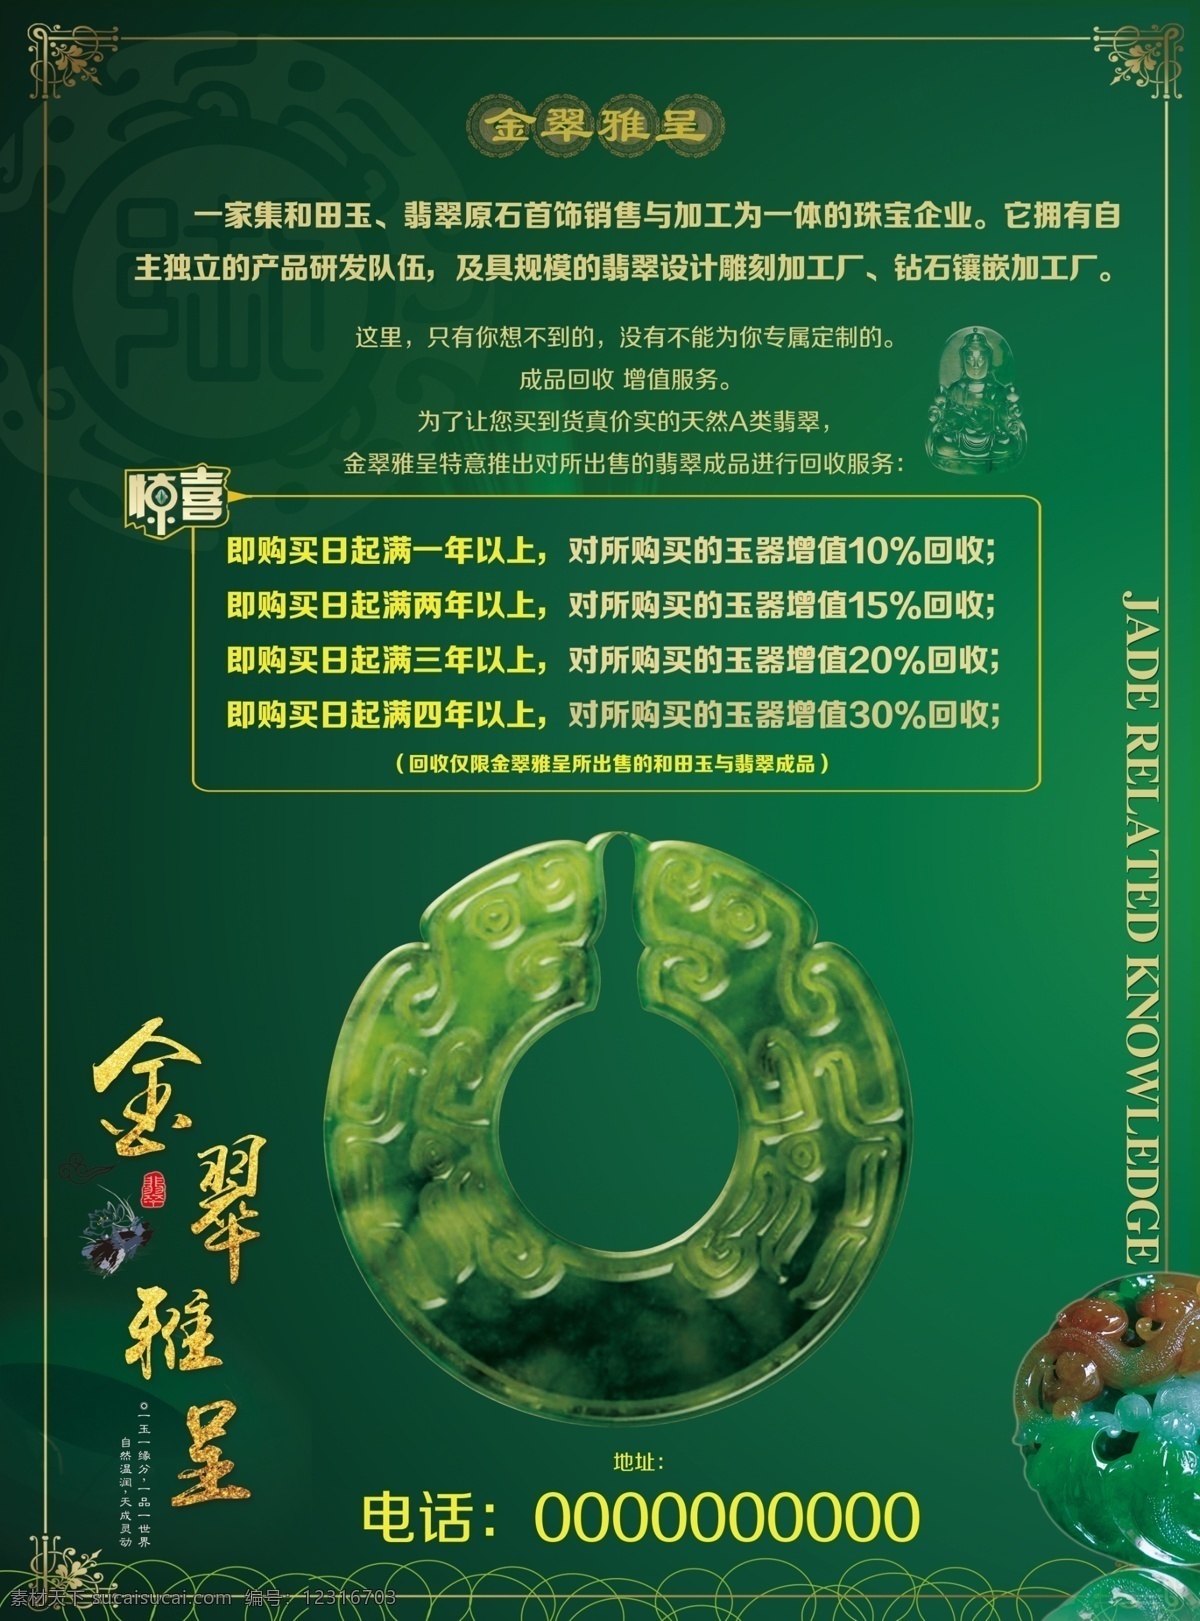 翡翠玉器 翡翠活动海报 玉器活动海报 金翠雅呈 绿色